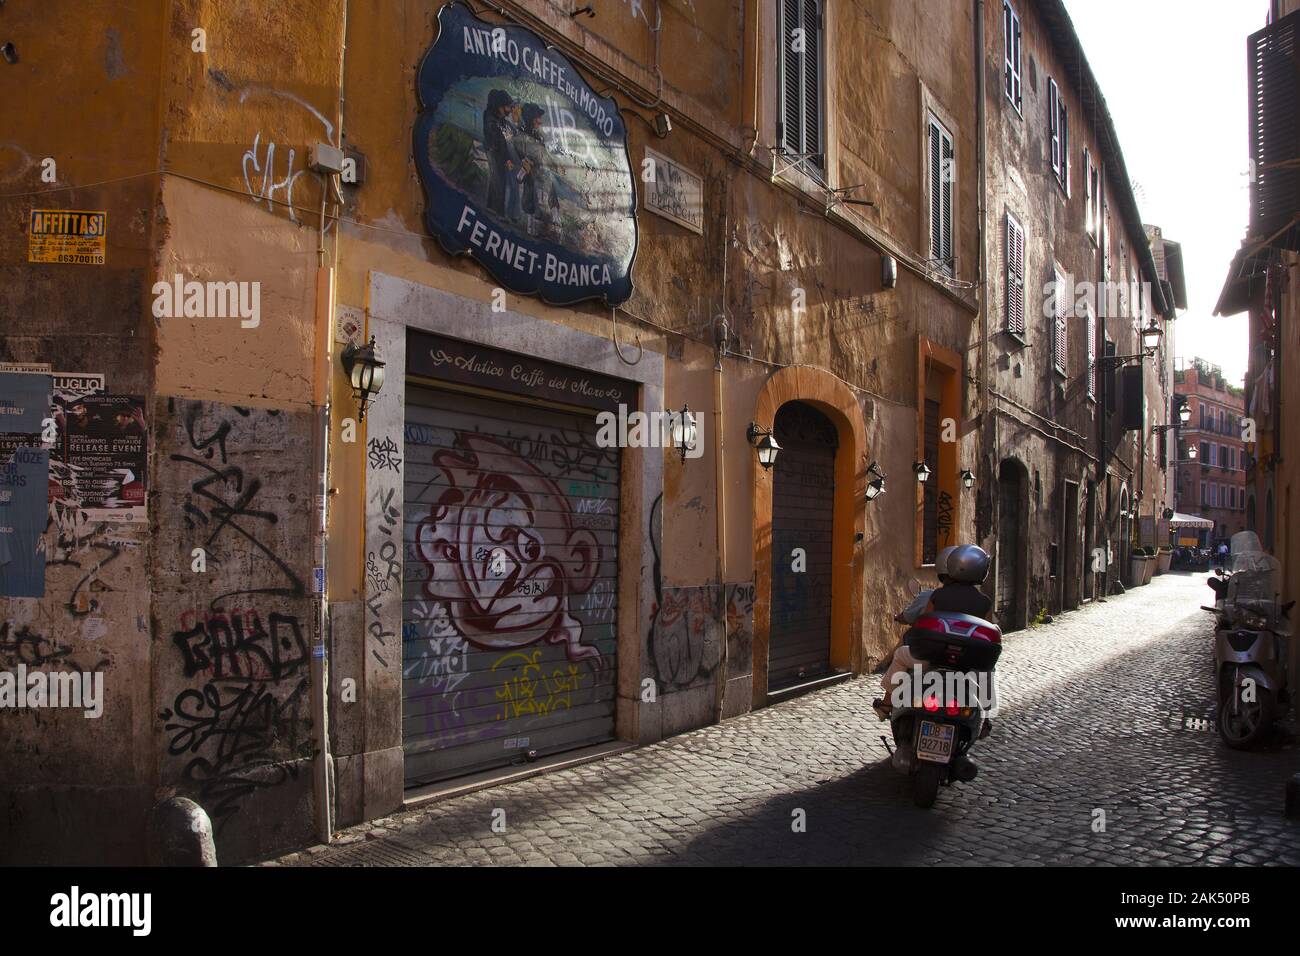 Via della pelliccia hi-res stock photography and images - Alamy